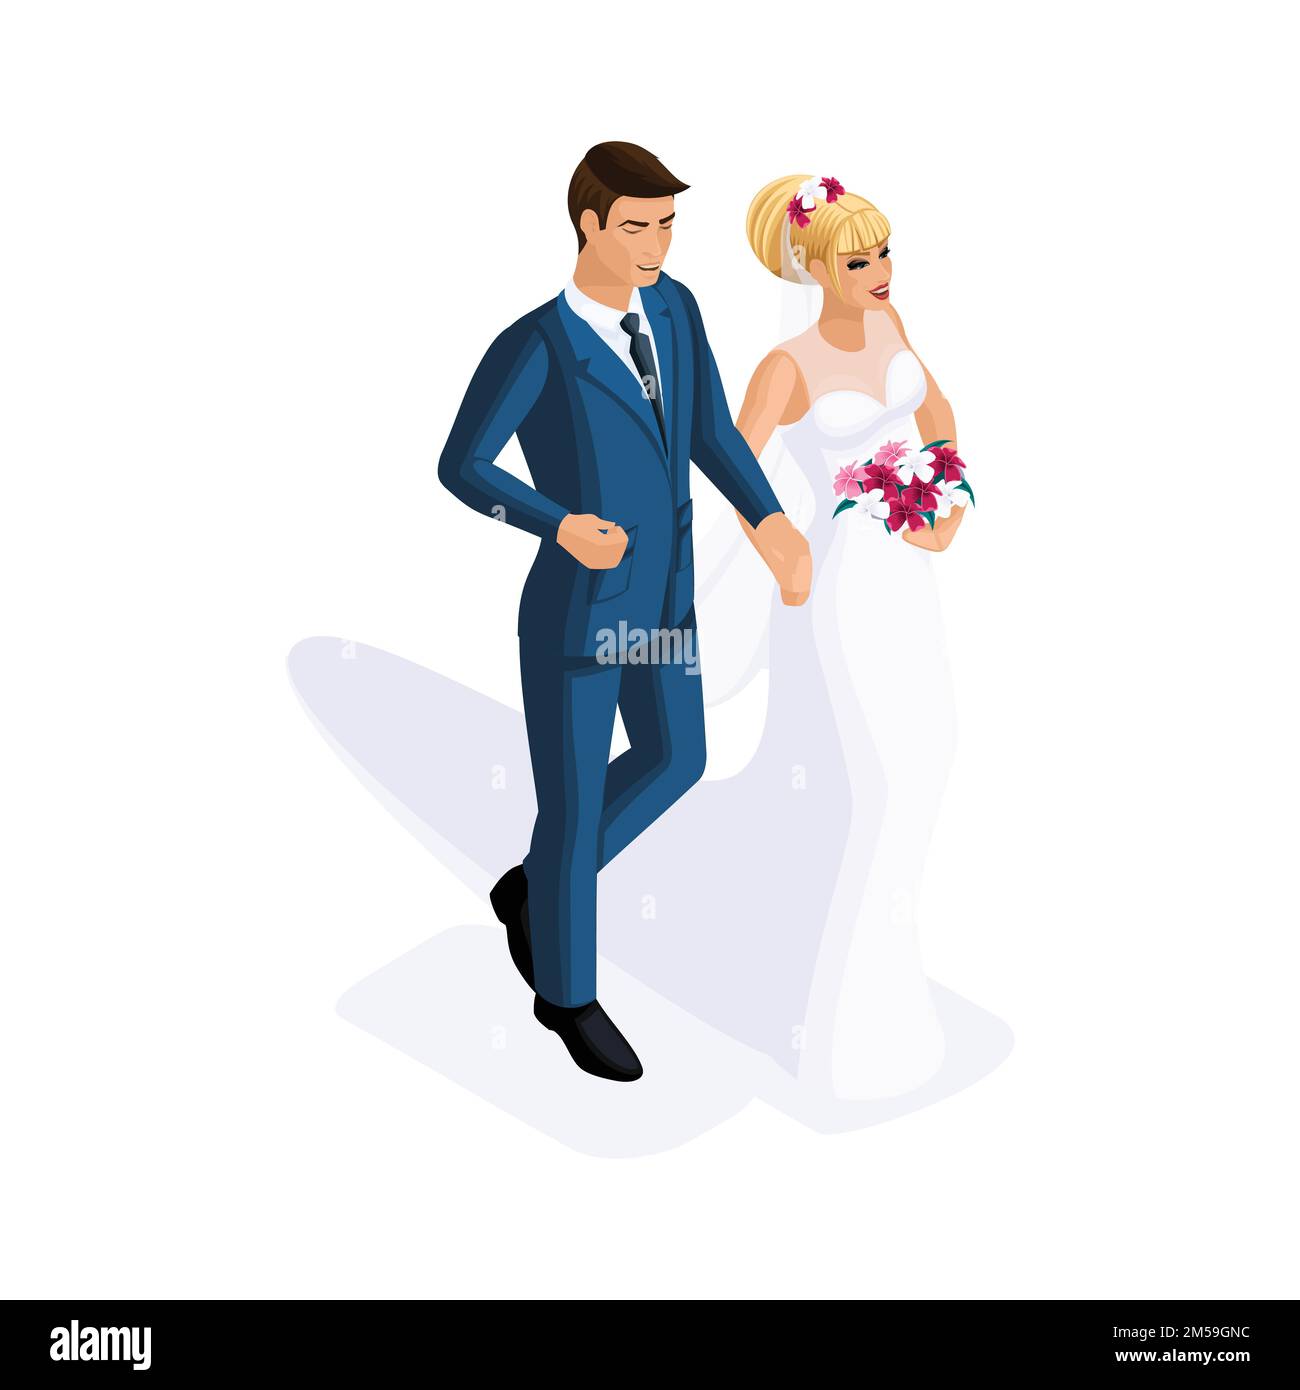 L'isométrie d'un homme et d'une femme lors d'un mariage, d'une mariée et d'un marié, d'une robe de mariage. Homme en costume, fille avec fleurs. Illustration de Vecteur